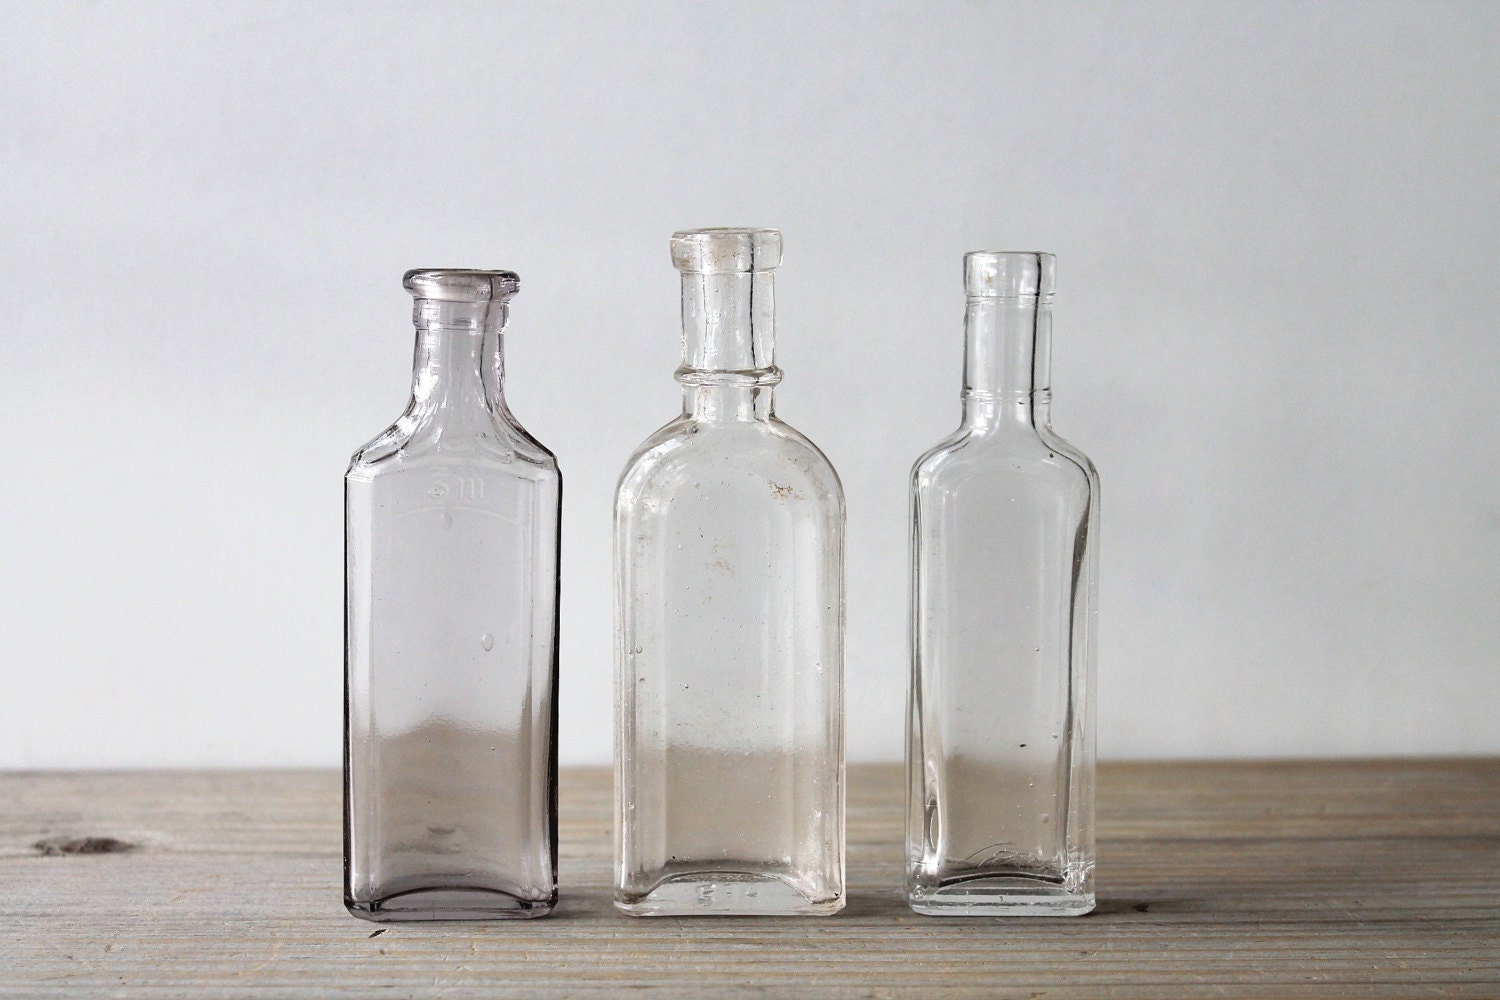 Download Vintage glass bottle set / antique medicine bottles / rustic